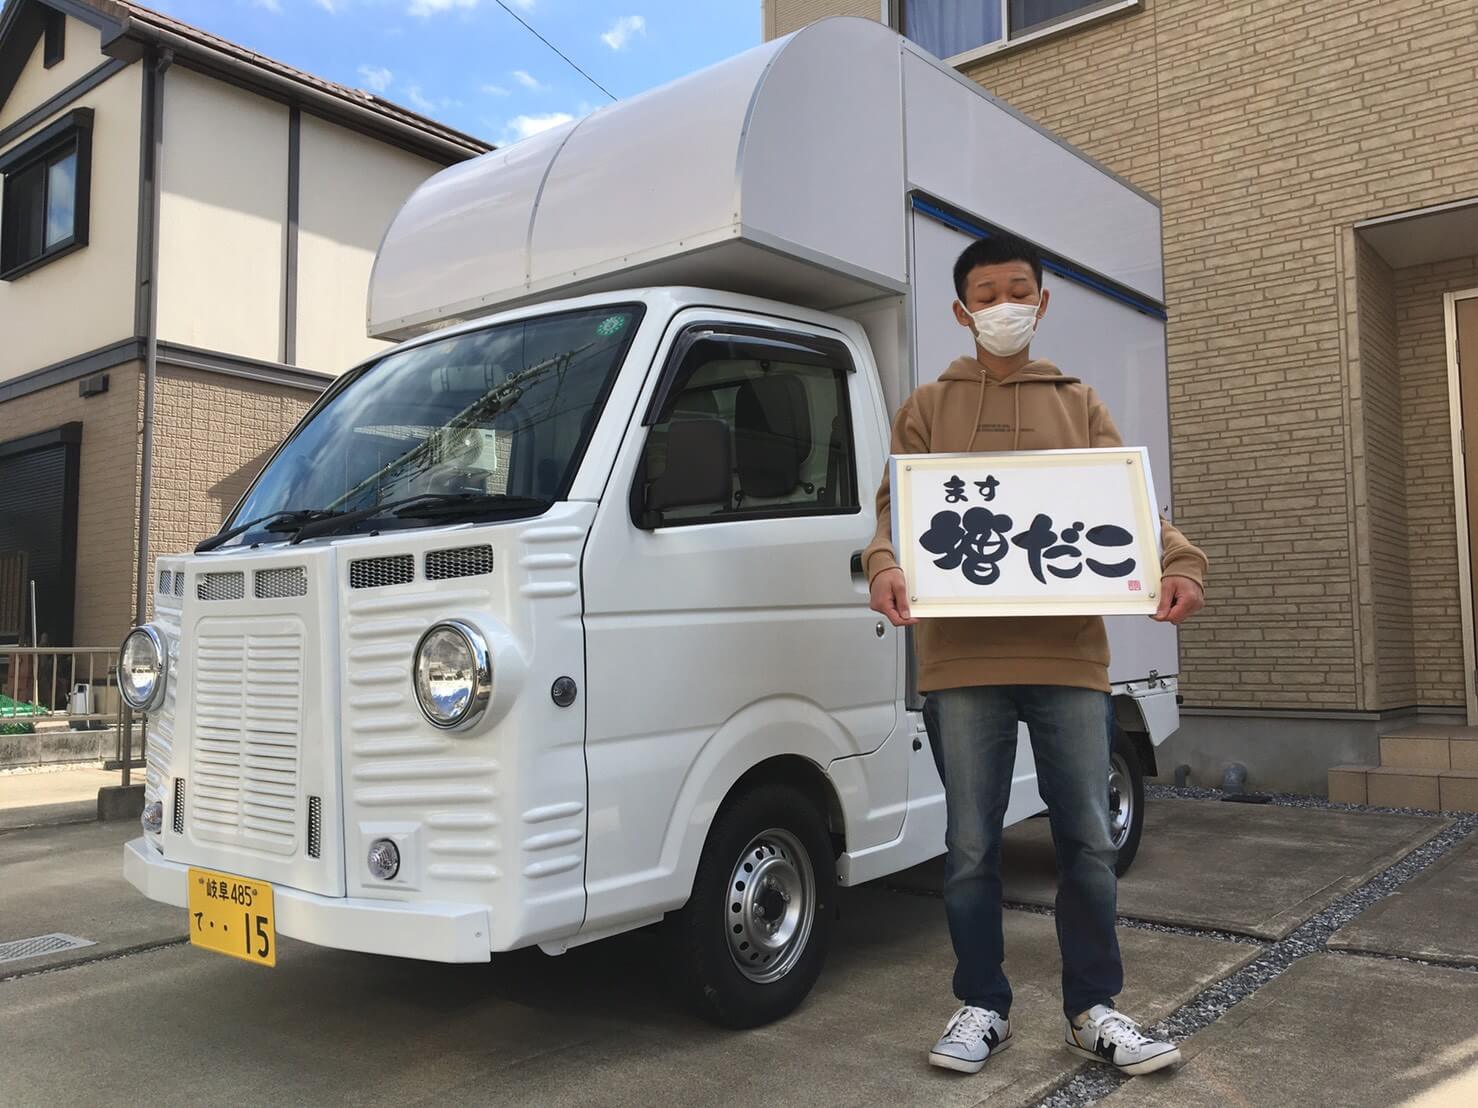 岐阜県岐阜市の増田様のキッチンカーを製作しました 移動販売車 キッチンカー の製作 フードトラックカンパニー 公式